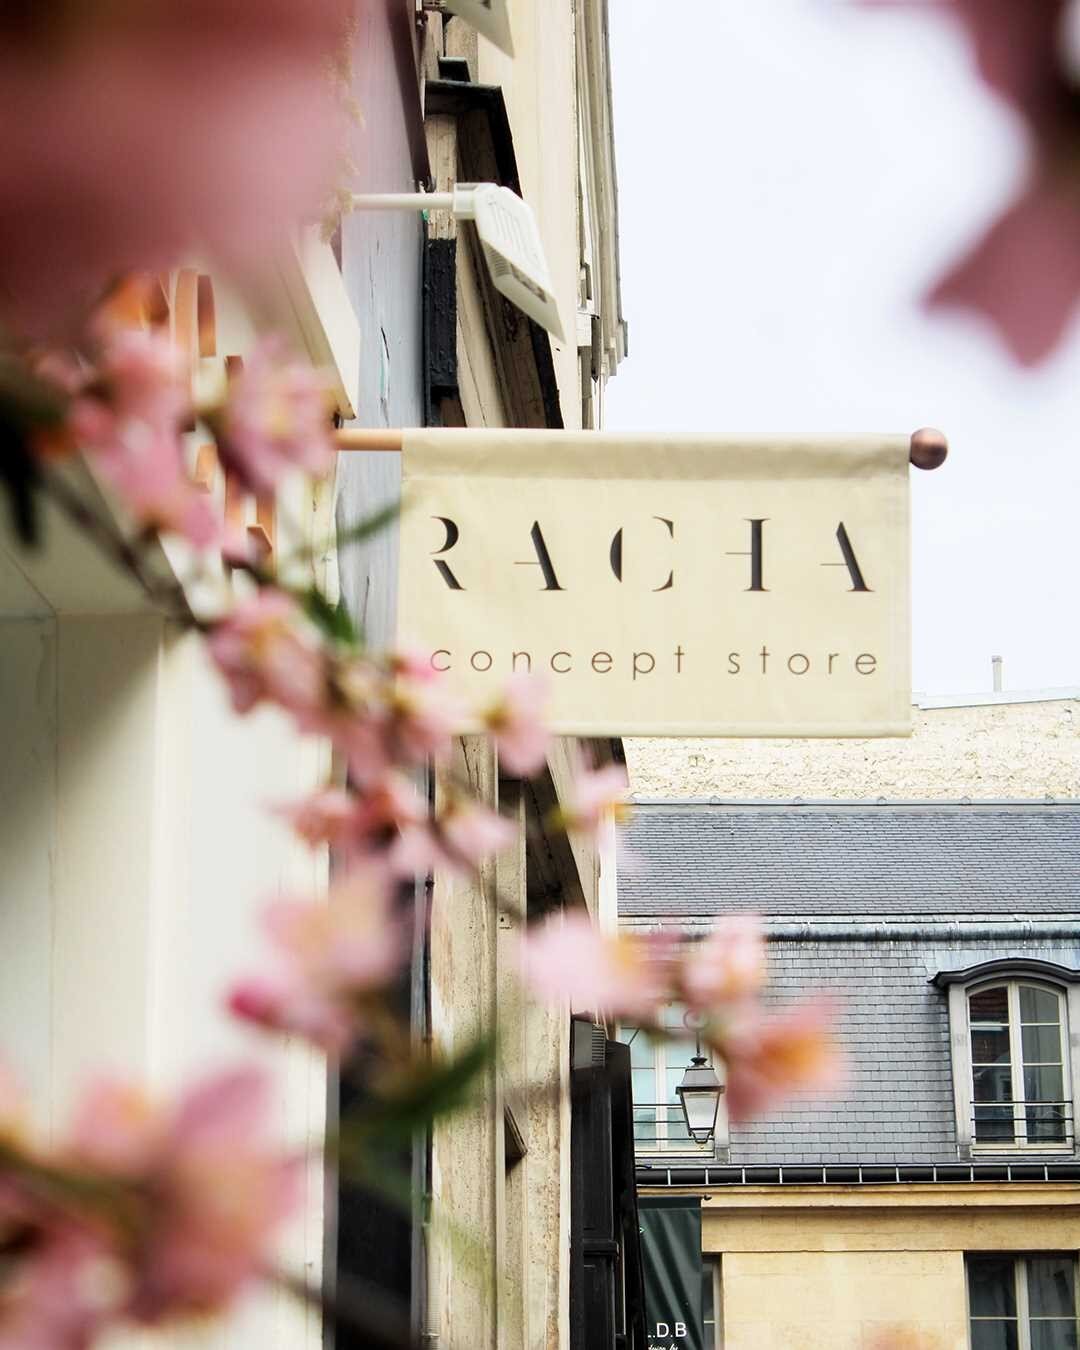 RACHA 

Retrouvez notre collection de pr&ecirc;t-&agrave;-porter sur https://www.racha.fr/ ou dans notre concept store RACHA situ&eacute; au 9 rue de Jarente, 75004 Paris. 

#modefrancaise #modefrance #madeinfrance #madeinfrance🇫🇷 #racha #foreverac